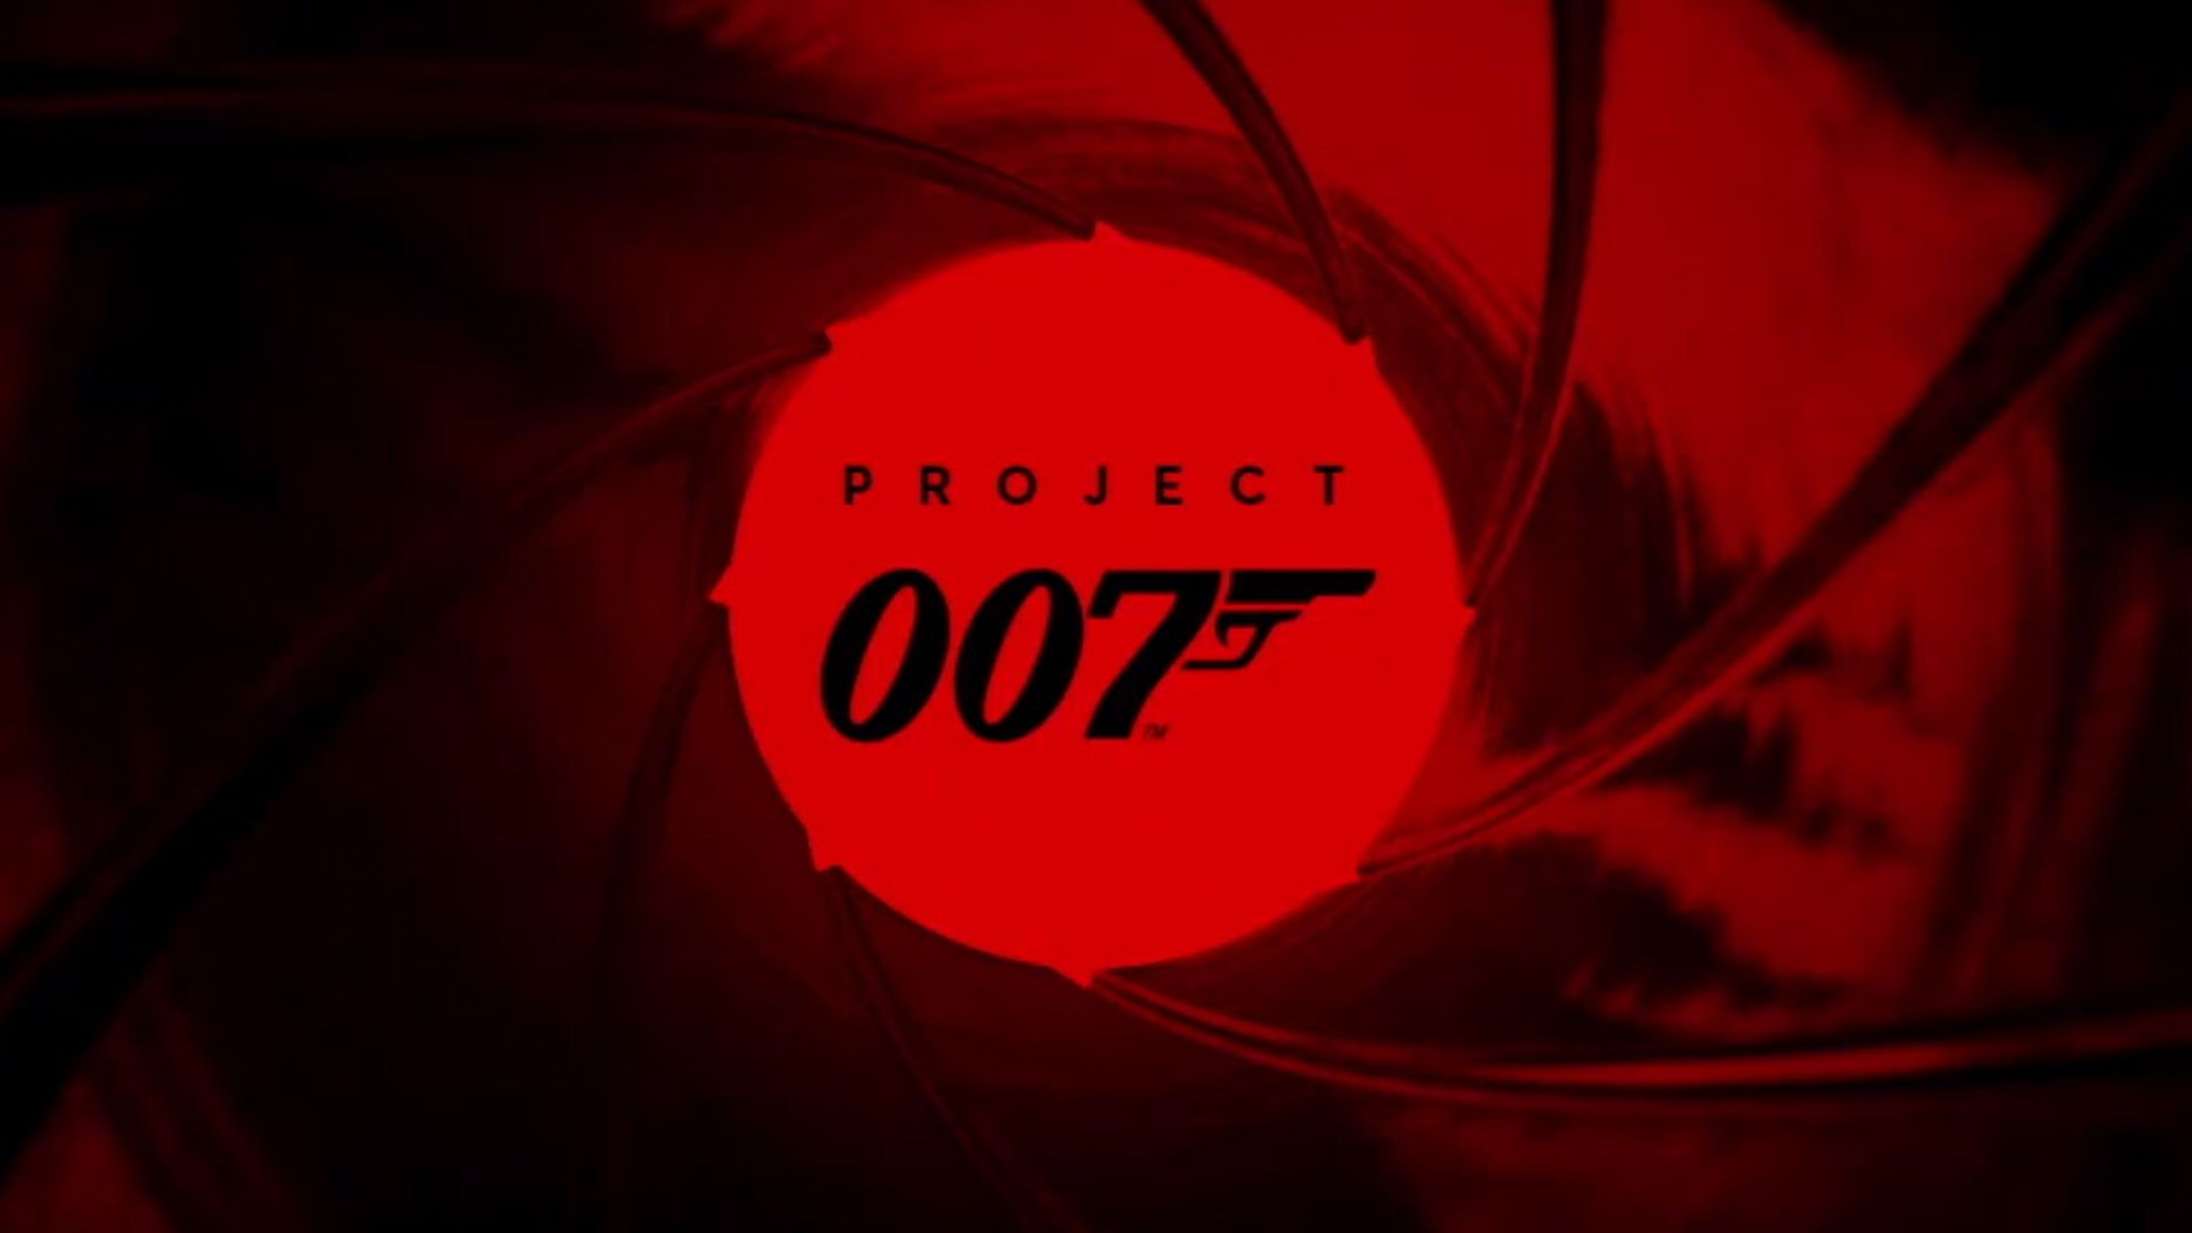 Dansk spilfirma taler ud om stort James Bond-projekt: »Det er starten på noget helt nyt«